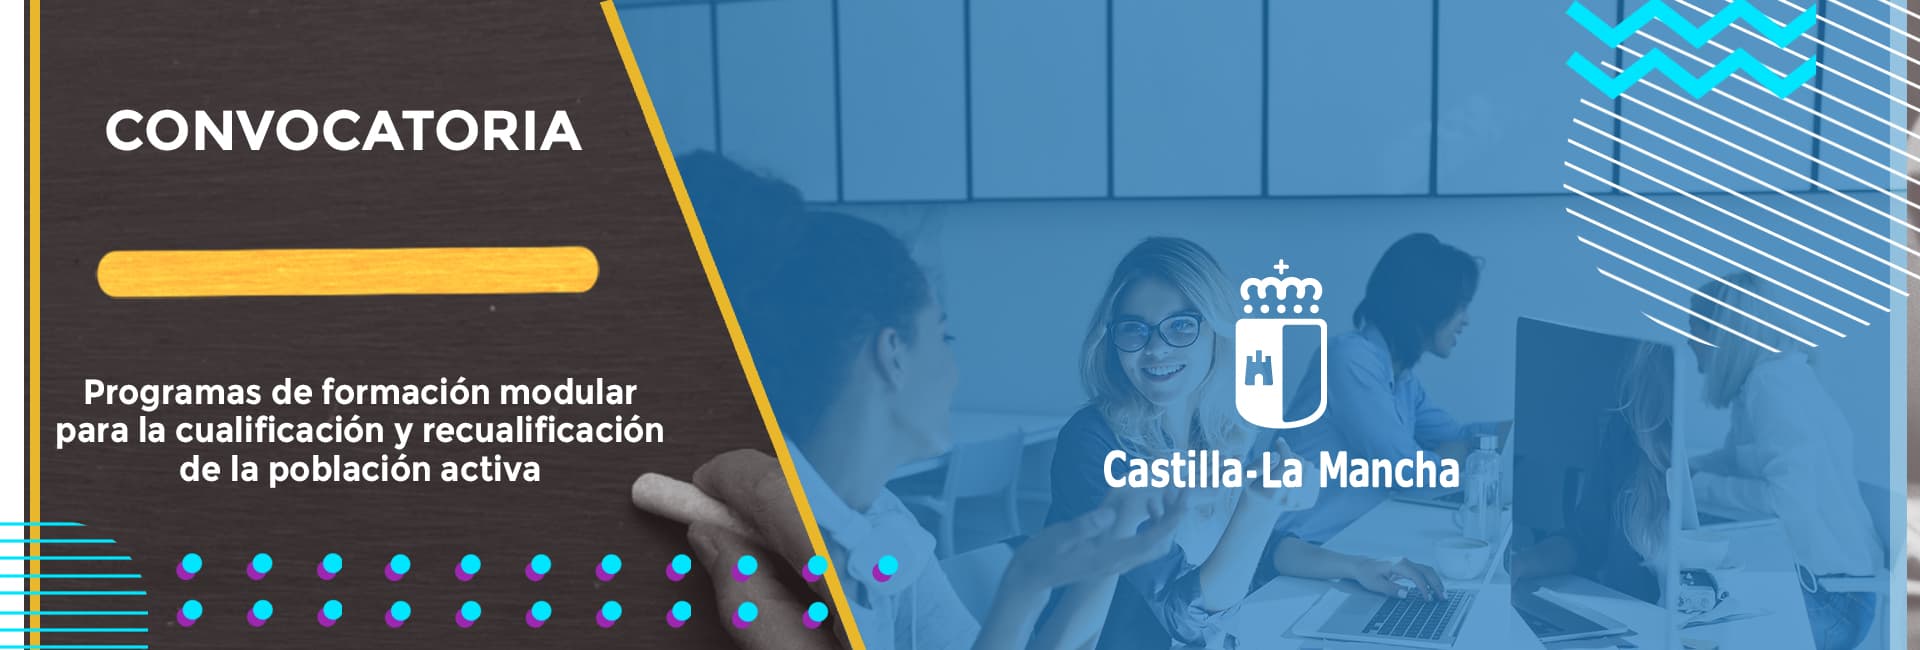 Castilla-La Mancha la convocatoria de subvenciones para desarrollar acciones formativas destinadas a la cualificación y recualificación de la población activa, en el marco del “Plan de Recuperación, Transformación y Resiliencia”